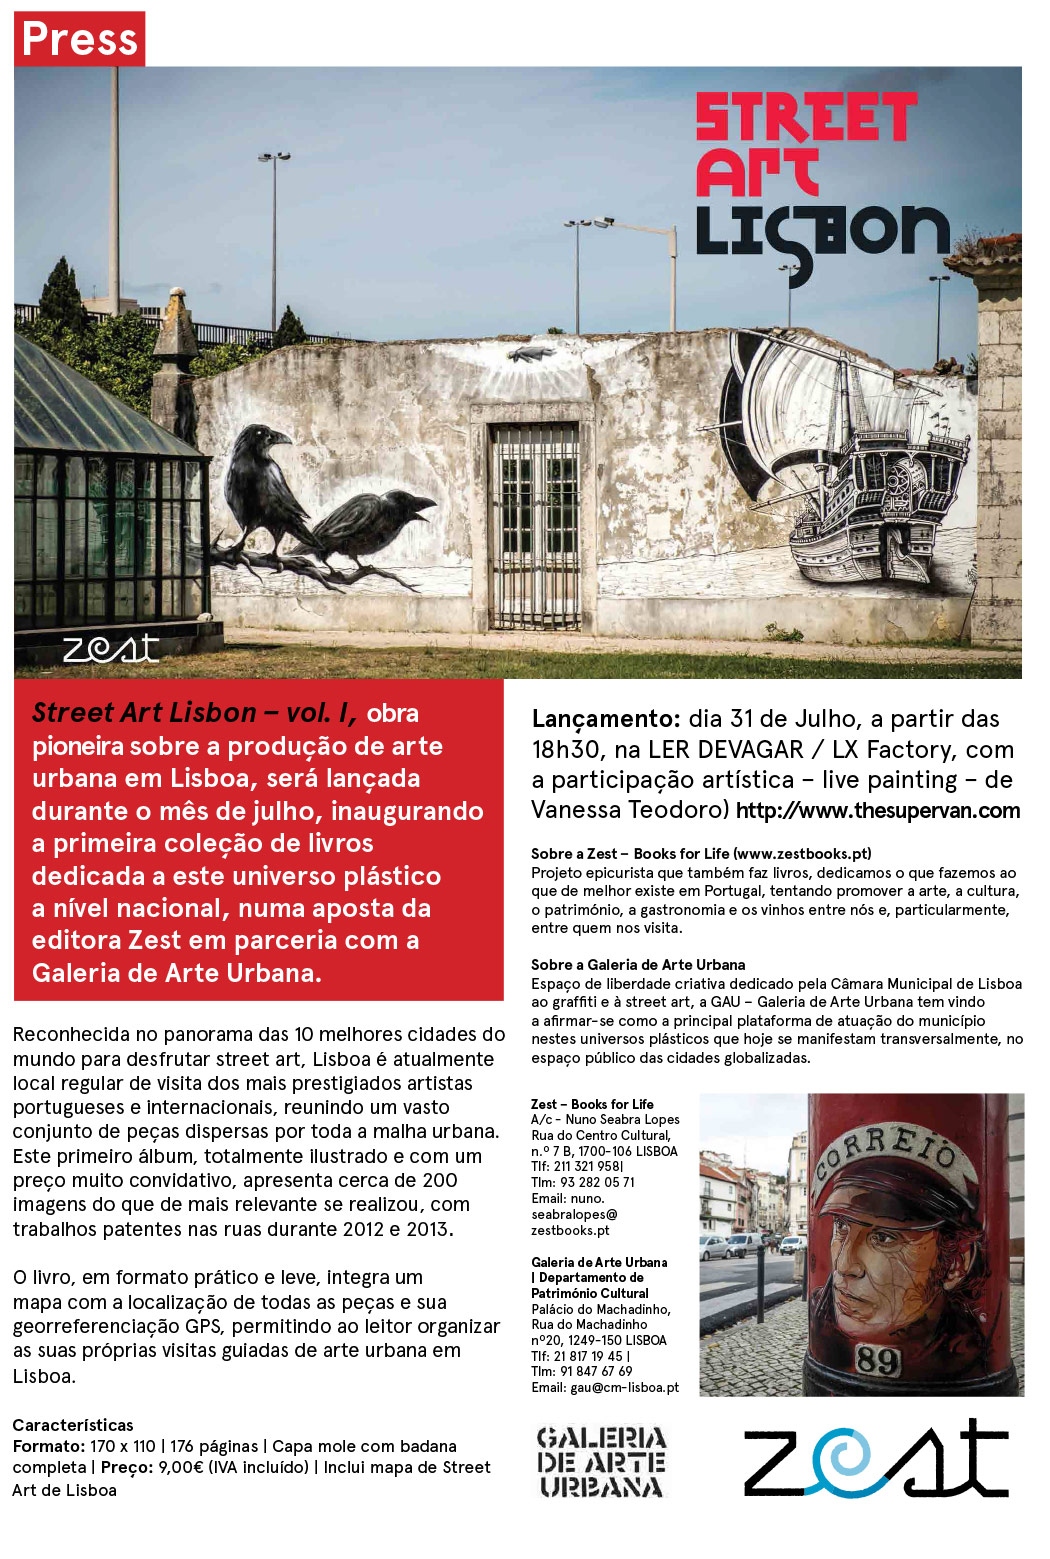 Street-Art-Press-Release